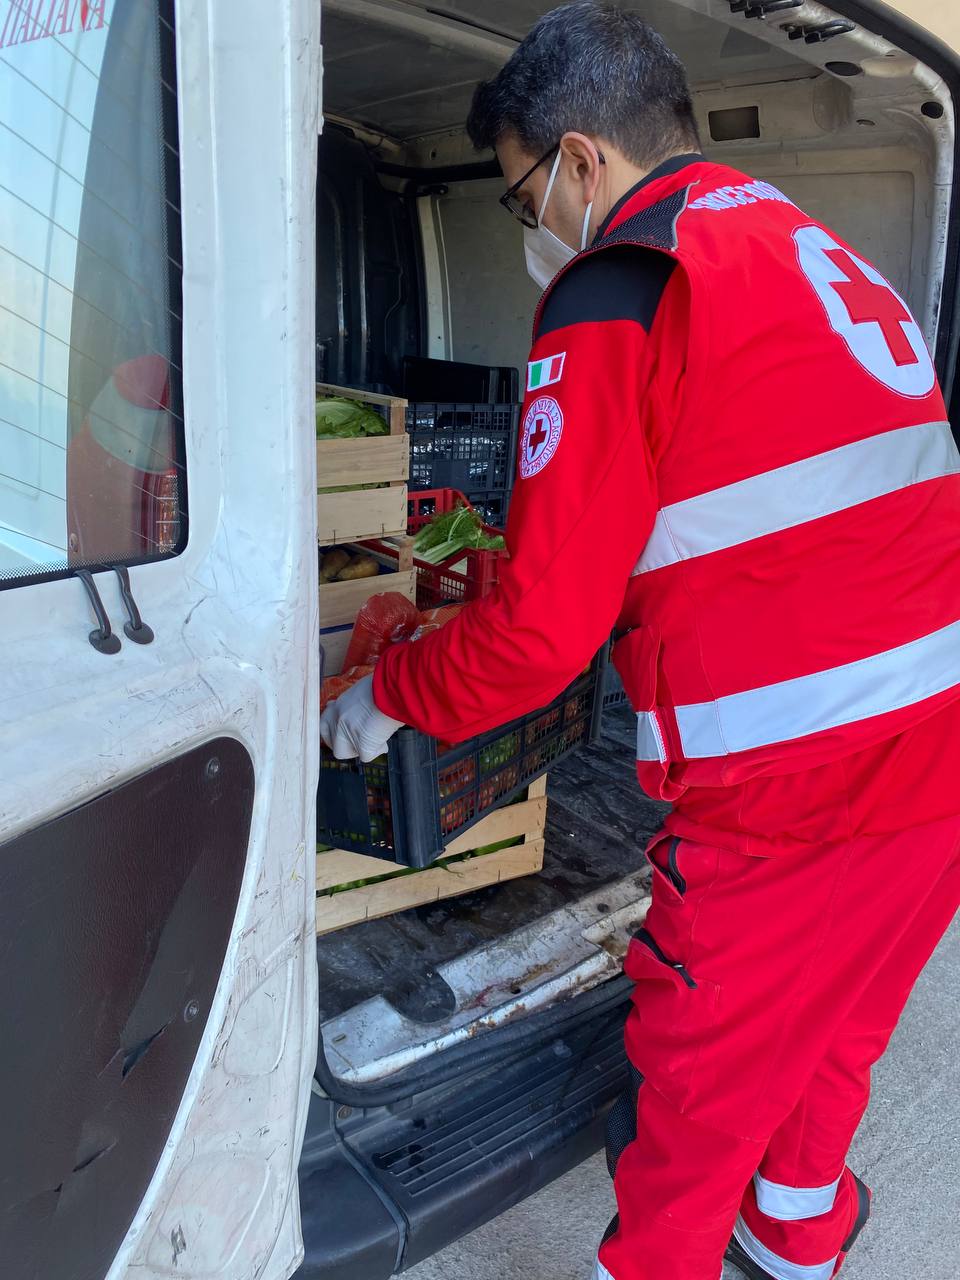 A Natale oltre 600 pasti tra cucinati e donati. Tre giorni di lavoro per la Croce Rossa Italiana di Caltanissetta a favore dei bisognosi